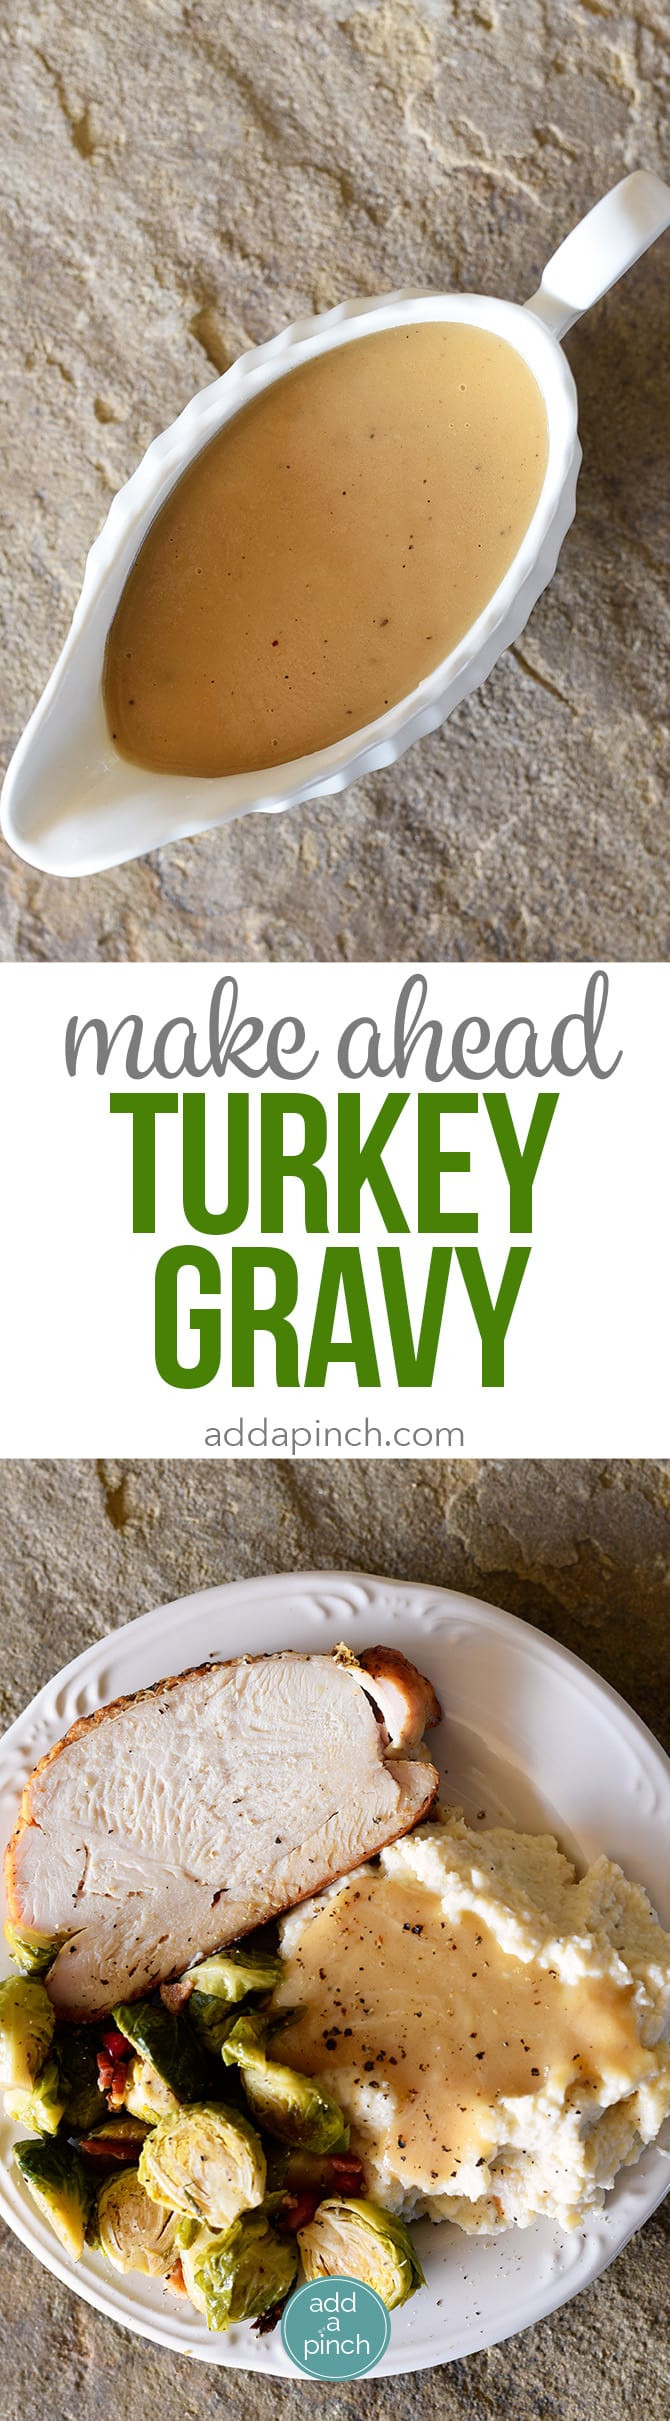 Make Ahead Turkey Gravy
 Make Ahead Turkey Gravy Recipe Add a Pinch